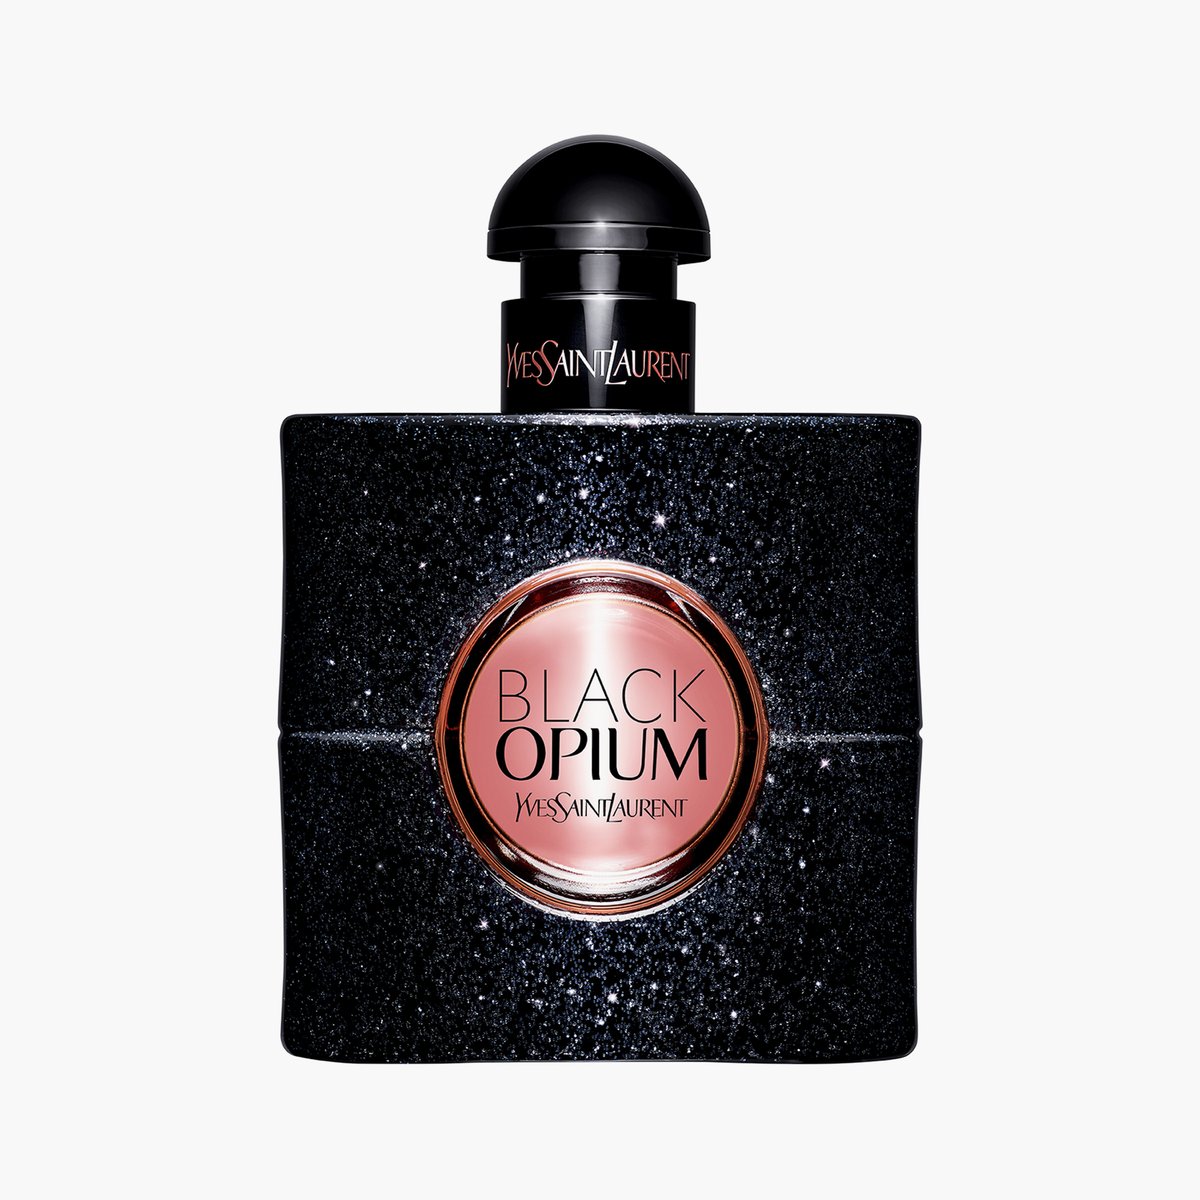 Yves Saint Laurent Black Opium Eau De Toilette - 50mL